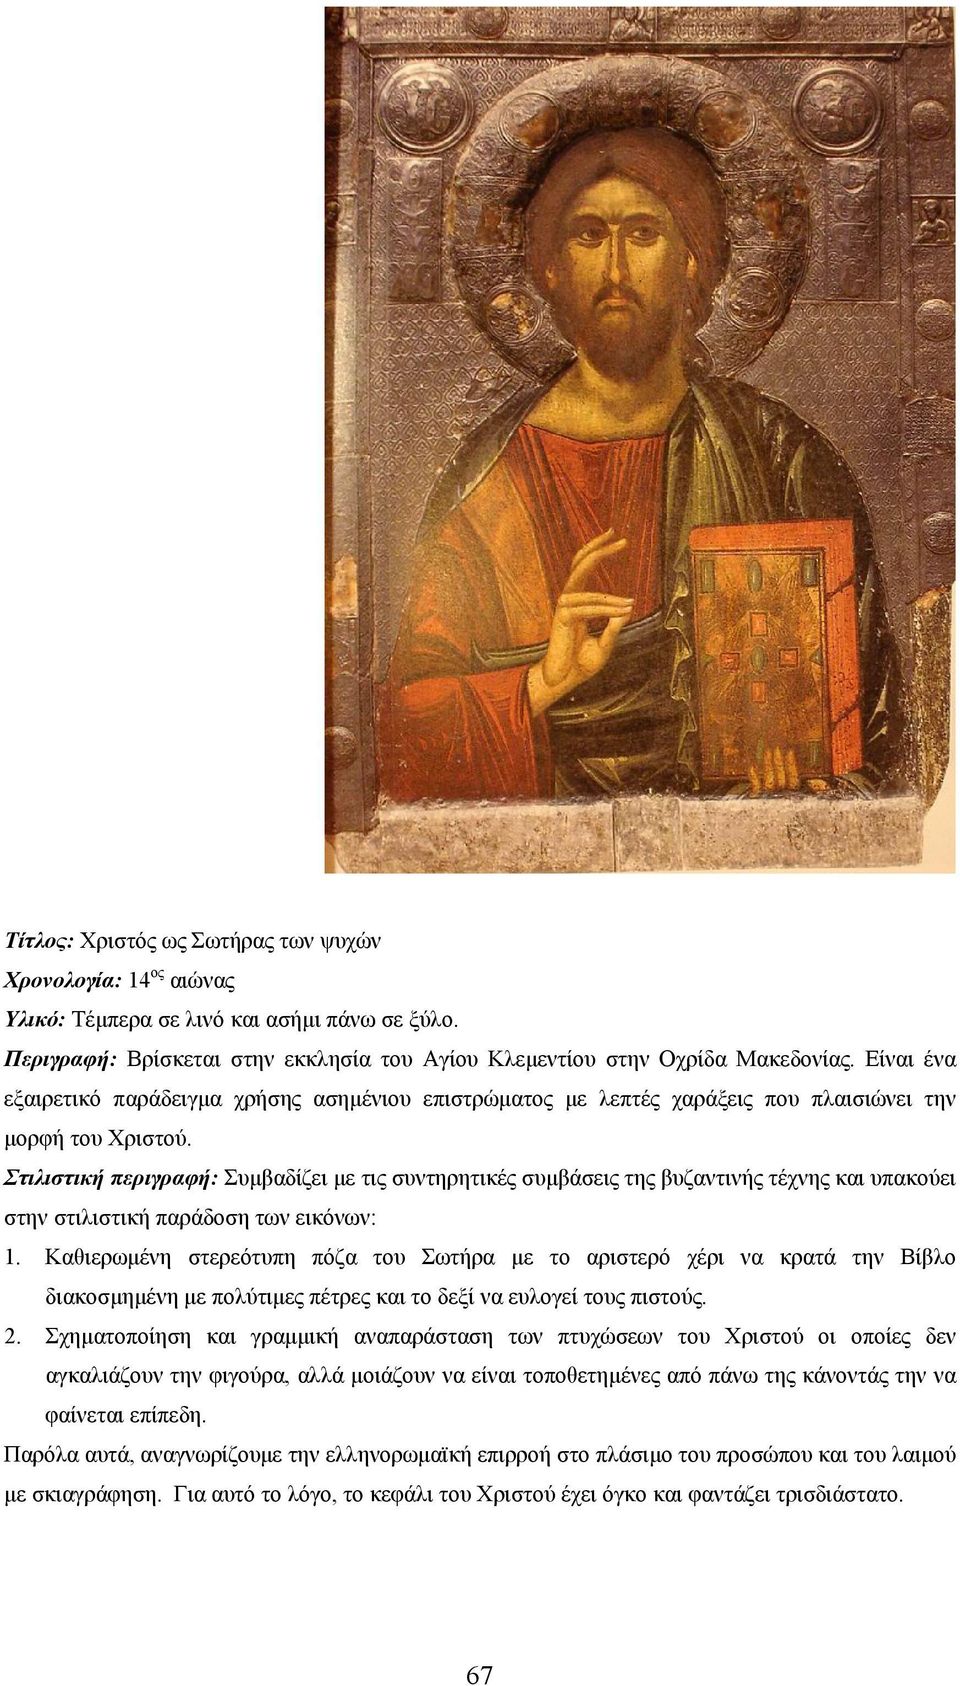 Στιλιστική περιγραφή: Συμβαδίζει με τις συντηρητικές συμβάσεις της βυζαντινής τέχνης και υπακούει στην στιλιστική παράδοση των εικόνων: 1.